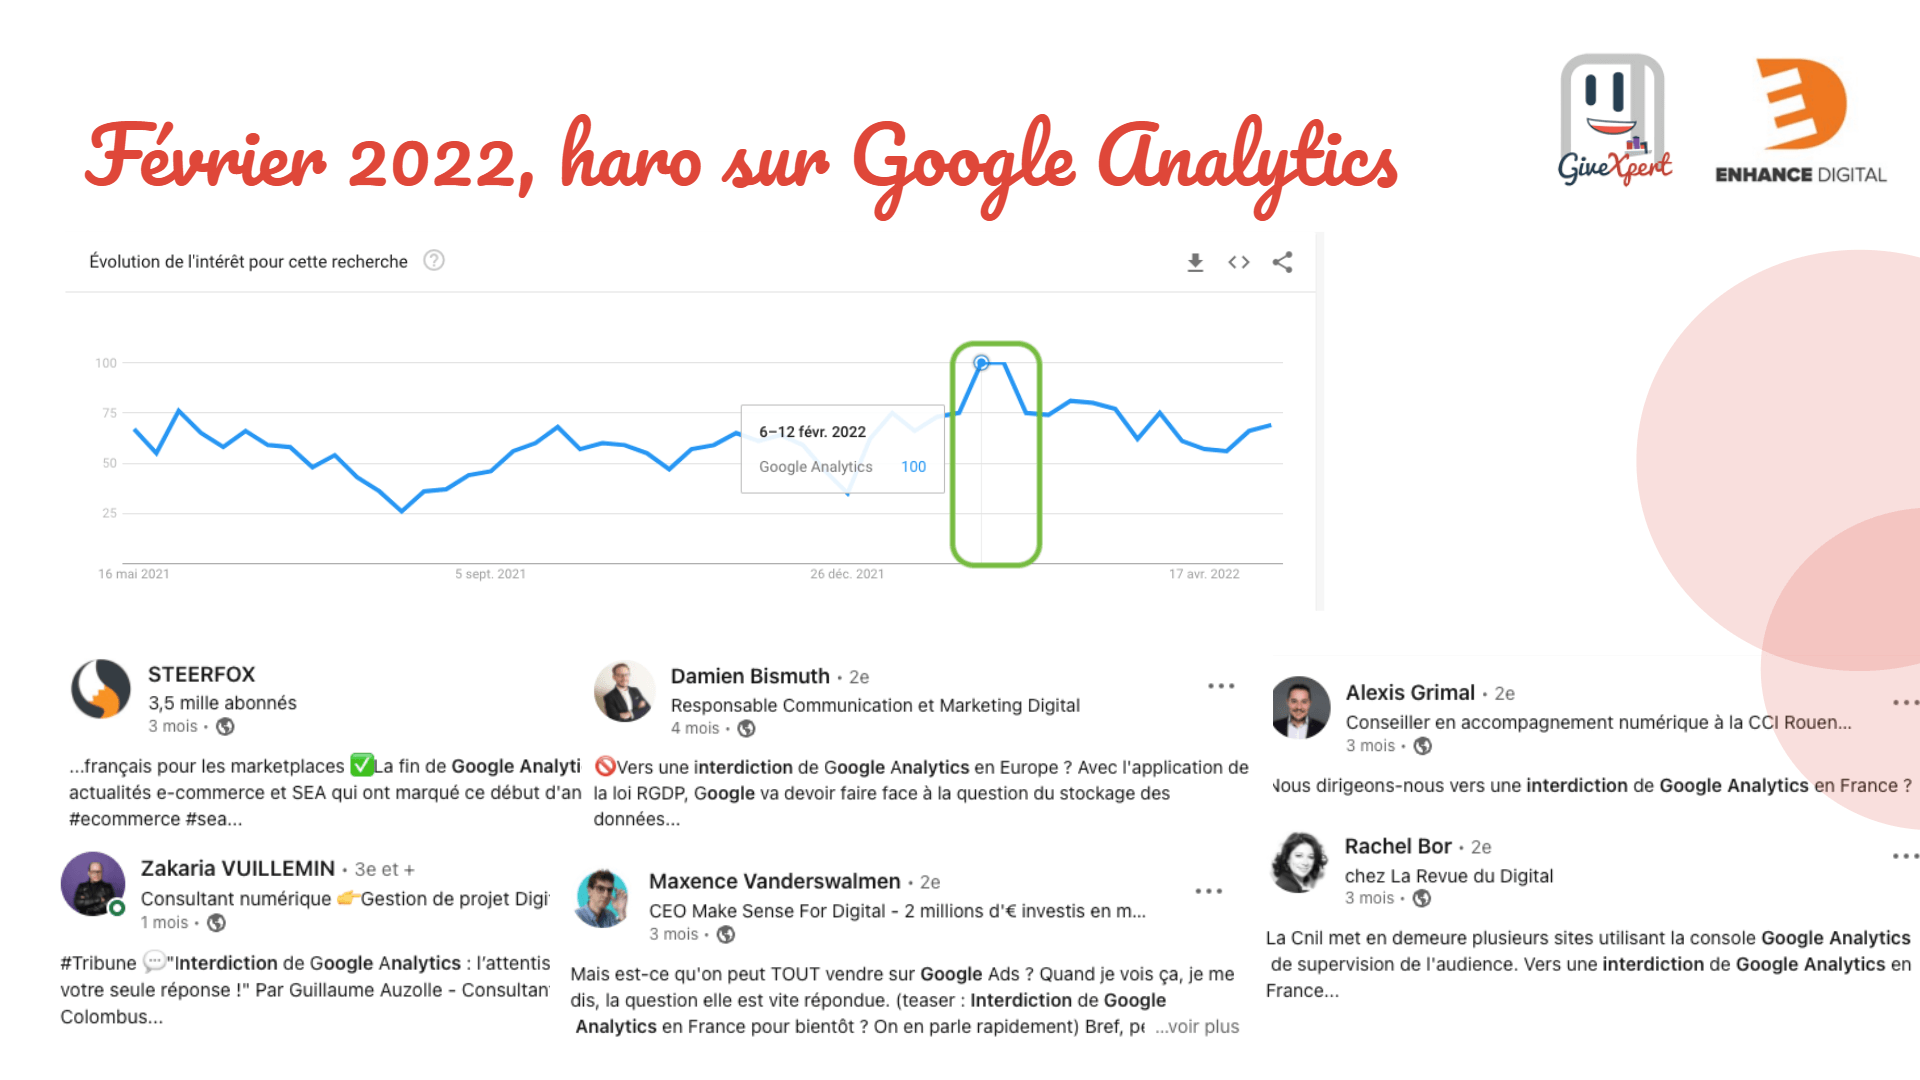 Alors pourquoi Google Analytics est ressorti tout d'un coup au niveau de l’actualité